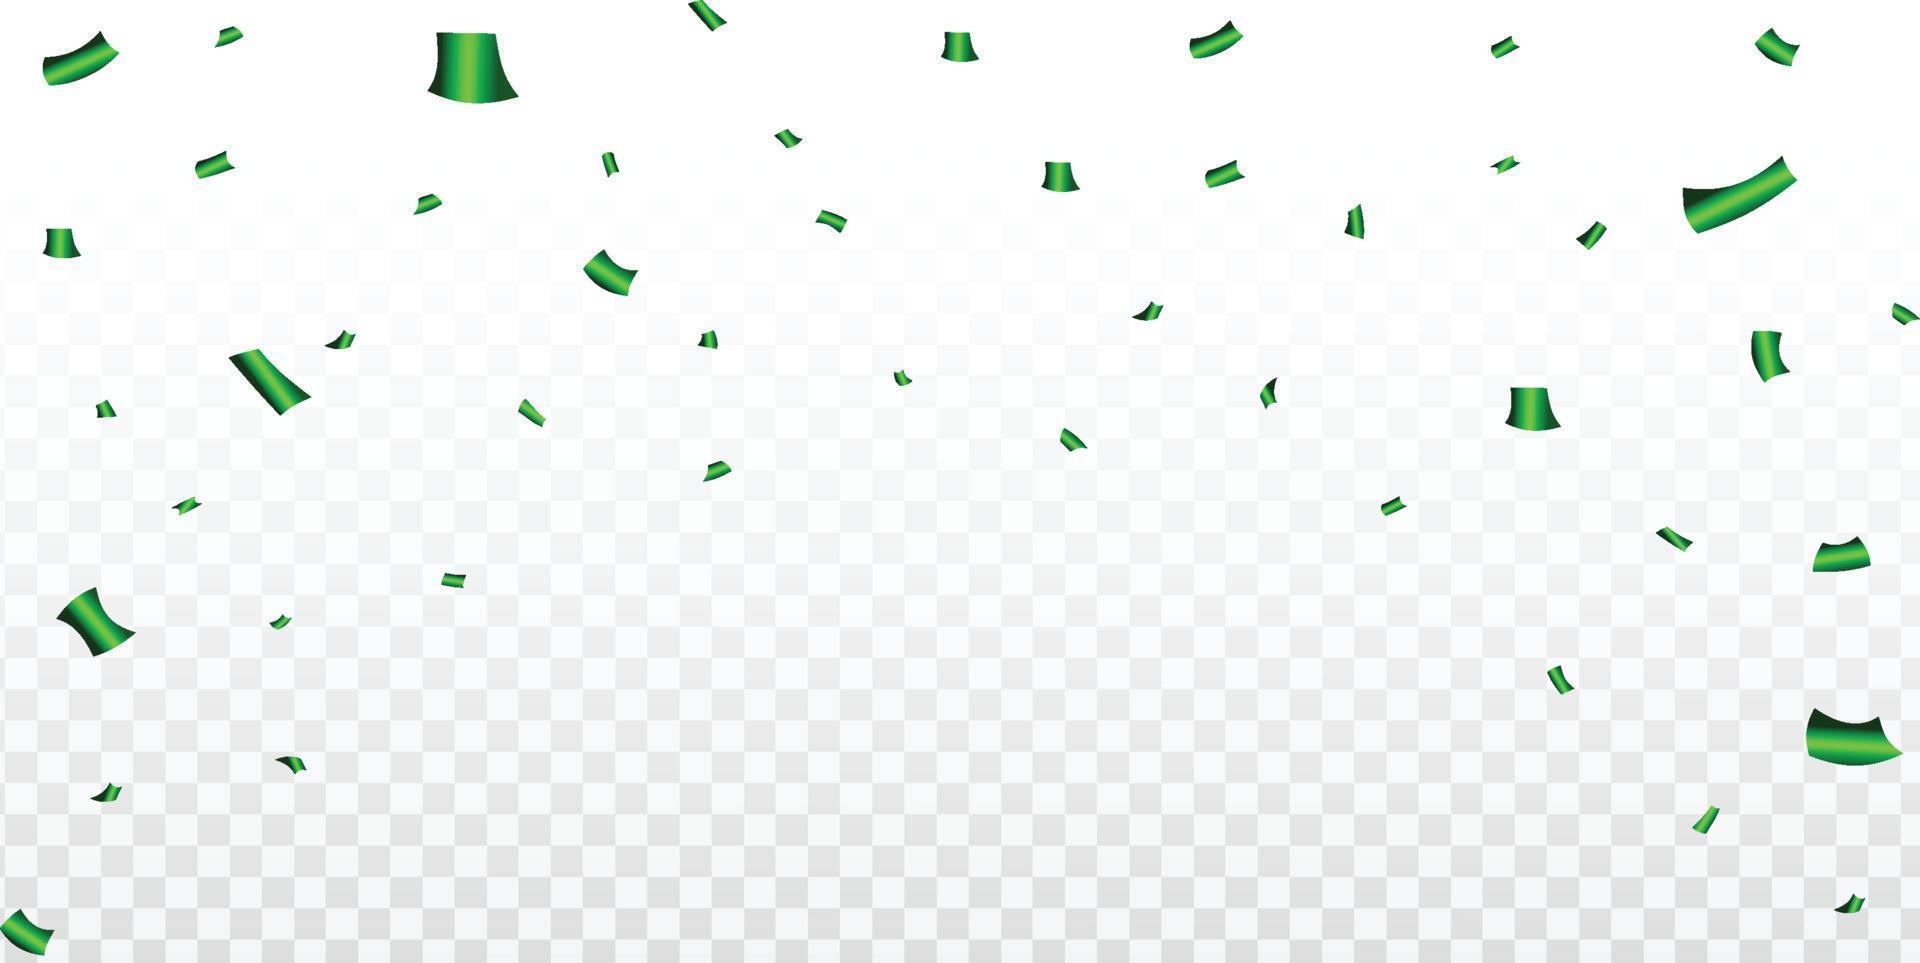 confettis verts et guirlandes tombant illustration sur fond transparent. vecteur de confettis colorés pour la célébration du festival et de la fête. élément de confettis verts pour fond de carnaval.